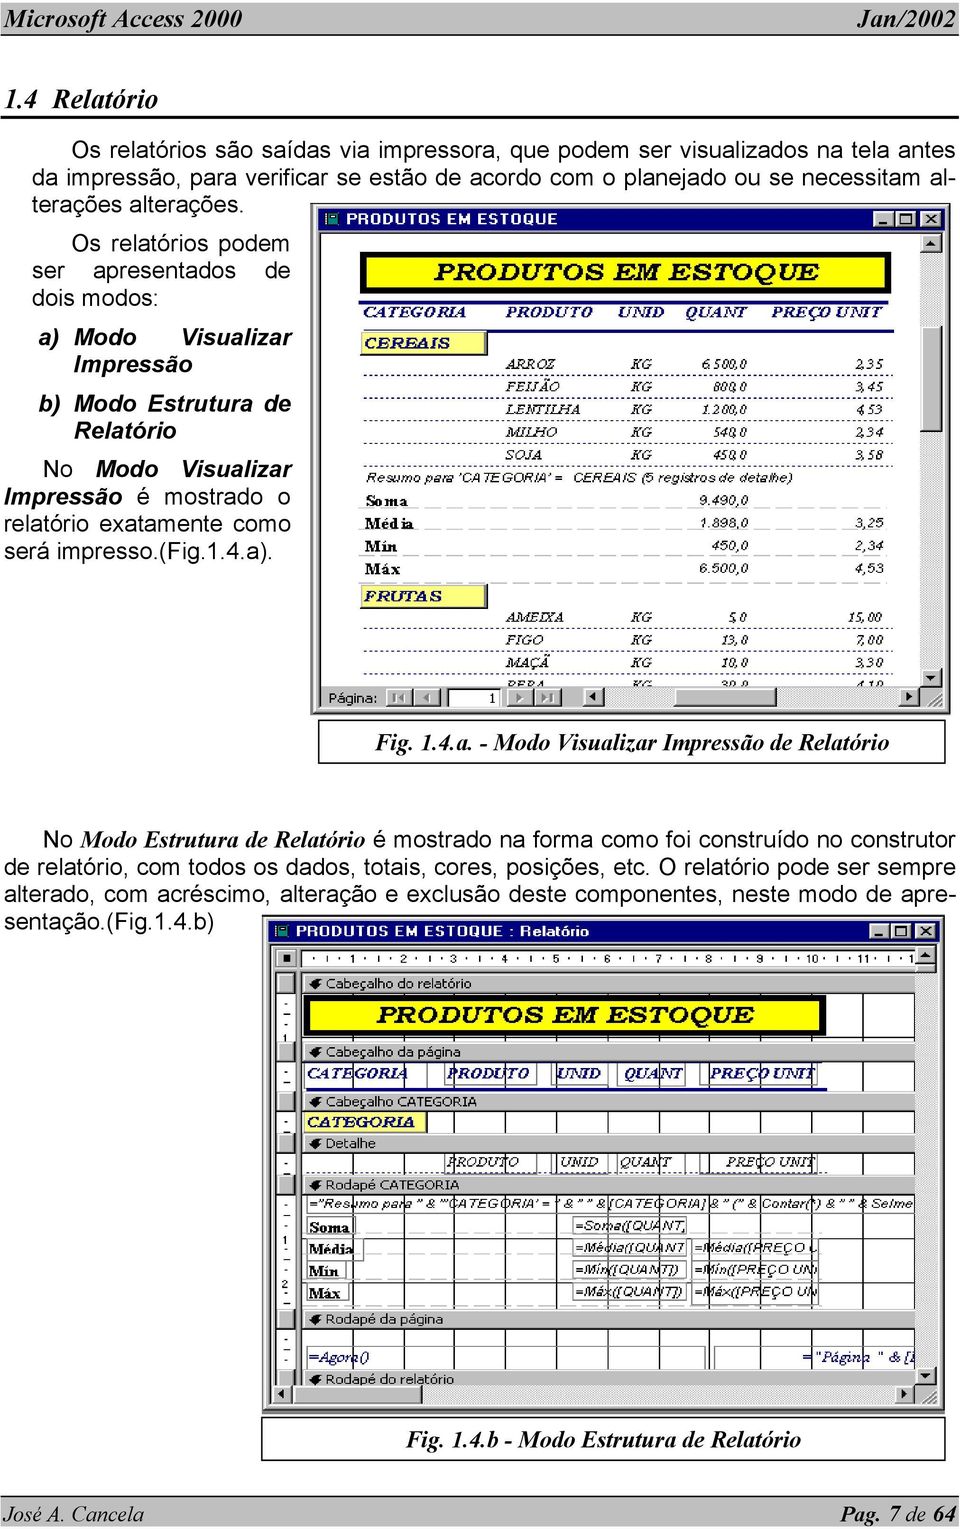 1.4.a). Fig. 1.4.a. - Modo Visualizar Impressão de Relatório No Modo Estrutura de Relatório é mostrado na forma como foi construído no construtor de relatório, com todos os dados, totais, cores, posições, etc.